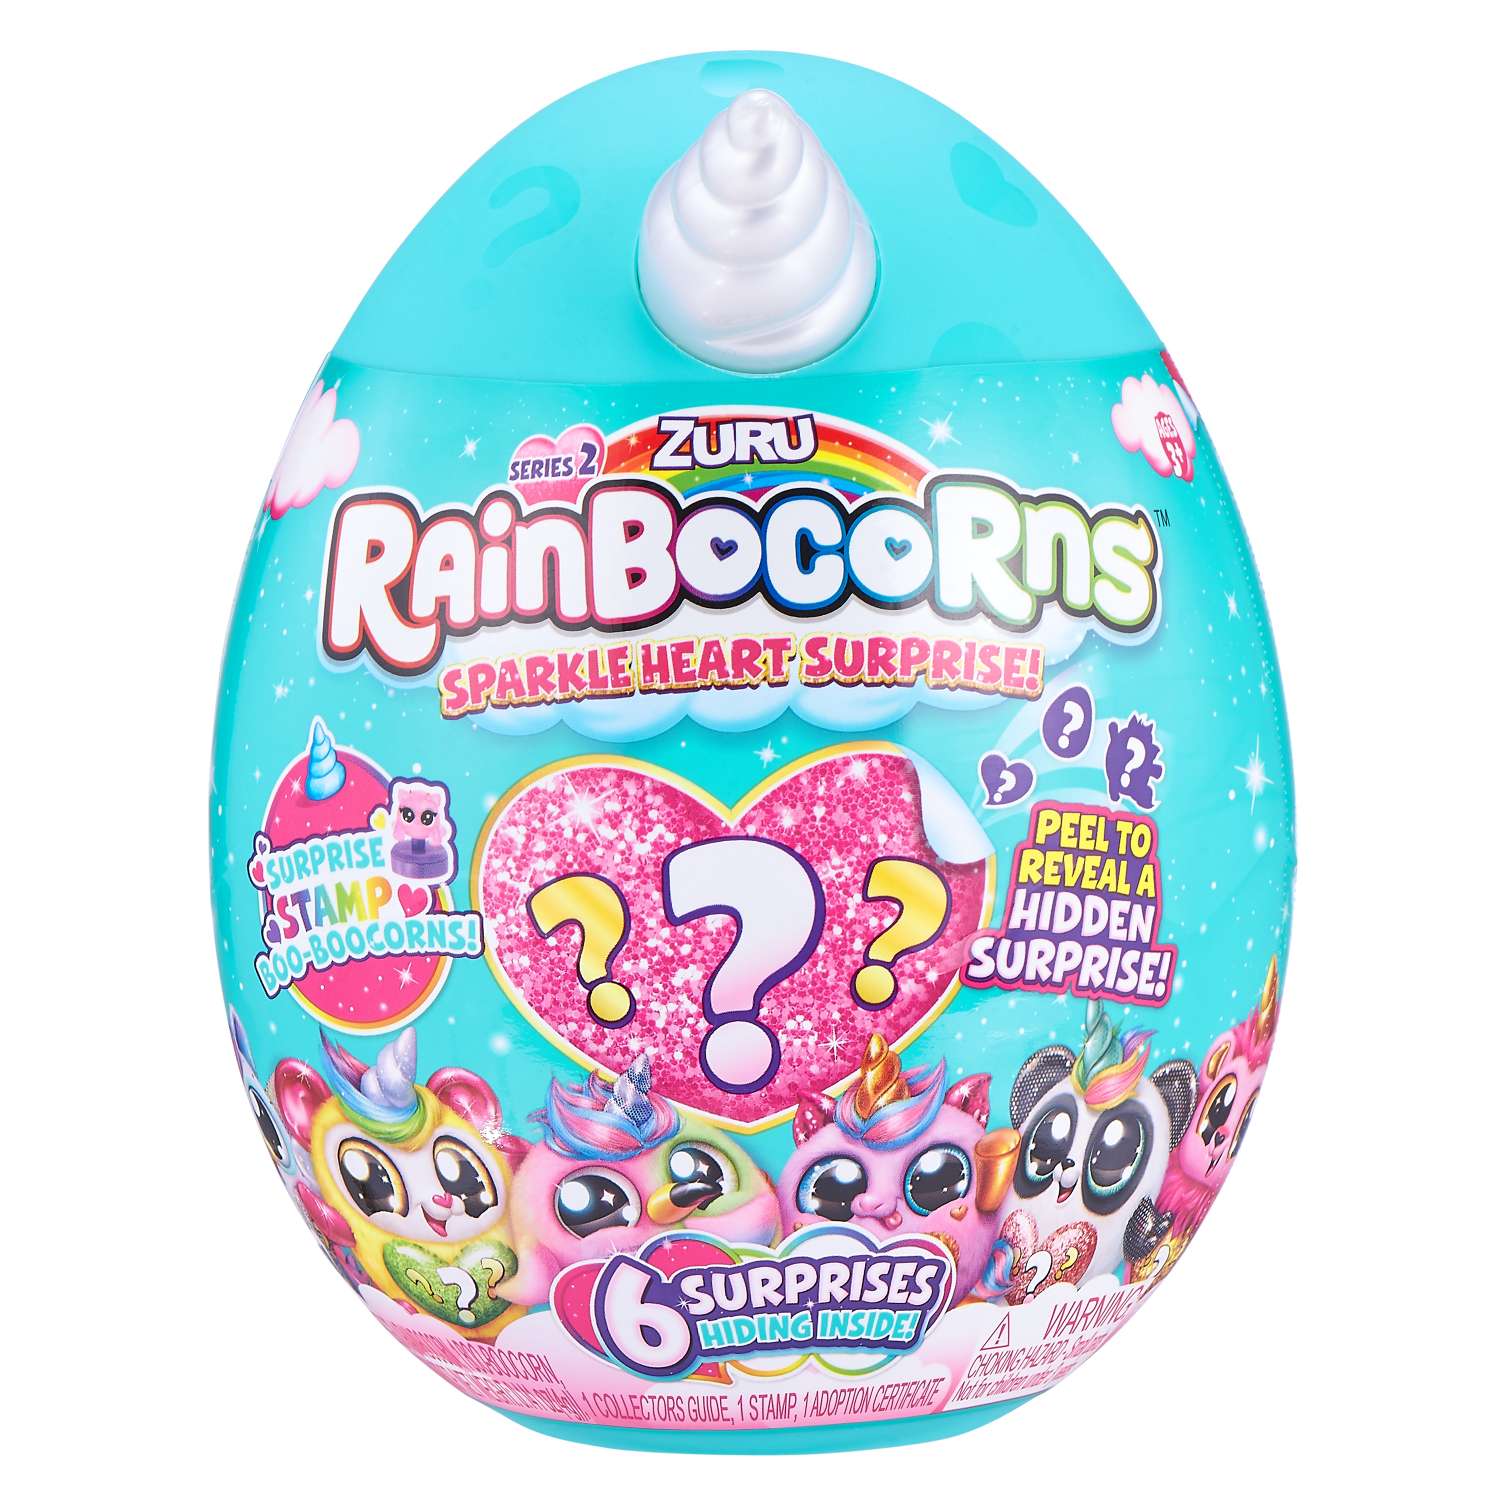 Игрушка Rainbocorns Rainbocorns Sparkle heart surprise S2 в непрозрачной упаковке (Сюрприз) 9214-S001 - фото 1